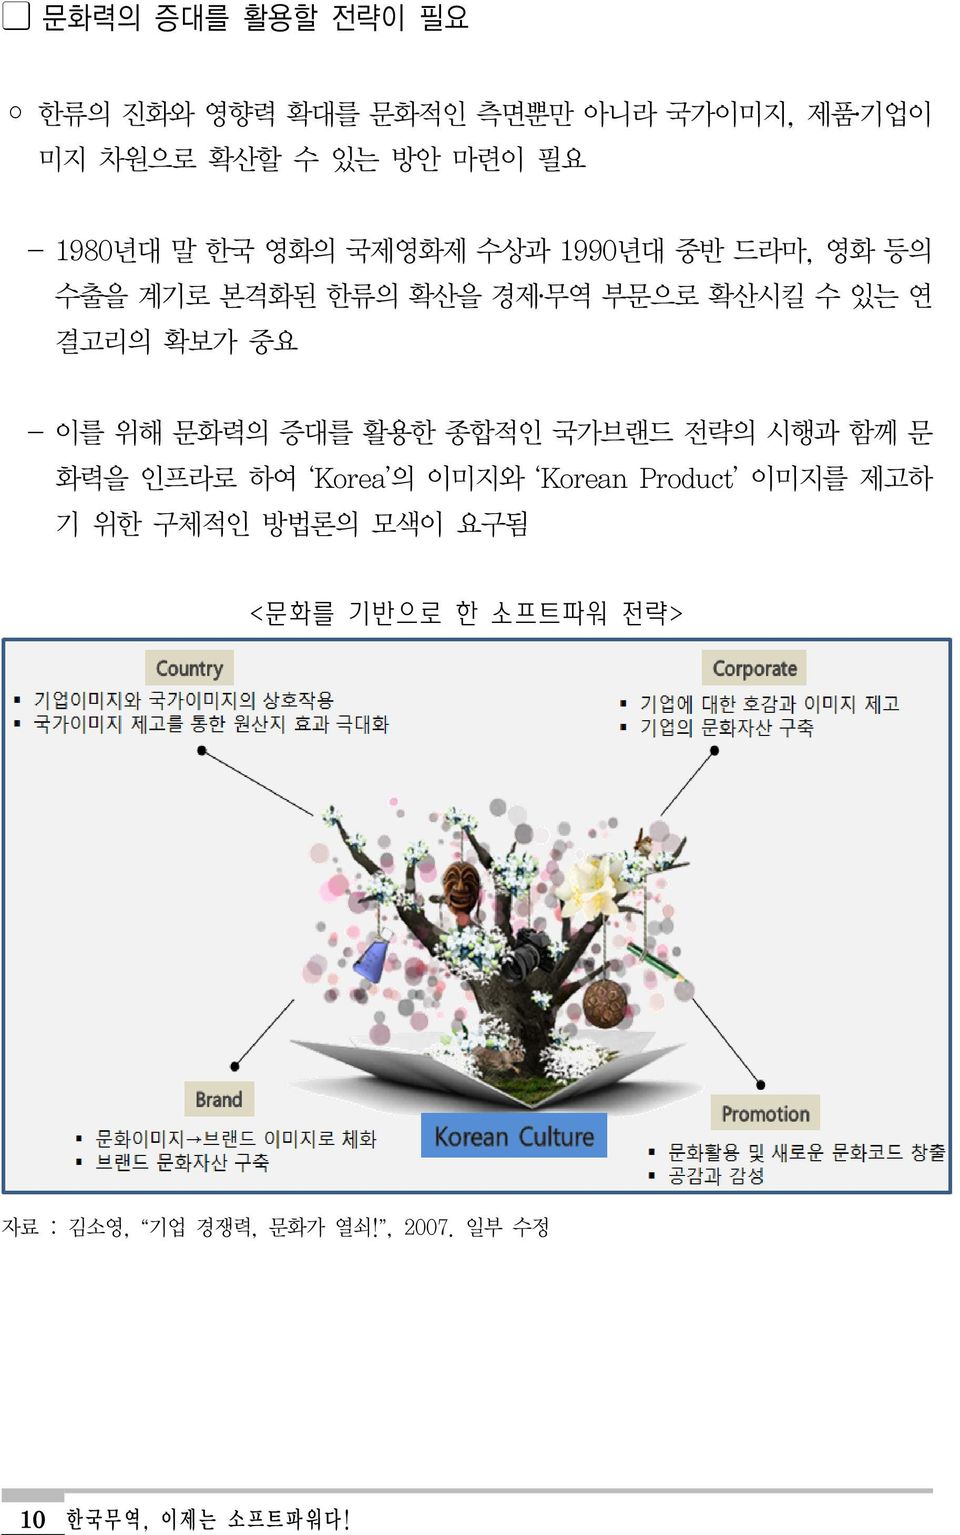 확보가 중요 - 이를 위해 문화력의 증대를 활용한 종합적인 국가브랜드 전략의 시행과 함께 문 화력을 인프라로 하여 Korea 의 이미지와 Korean Product 이미지를